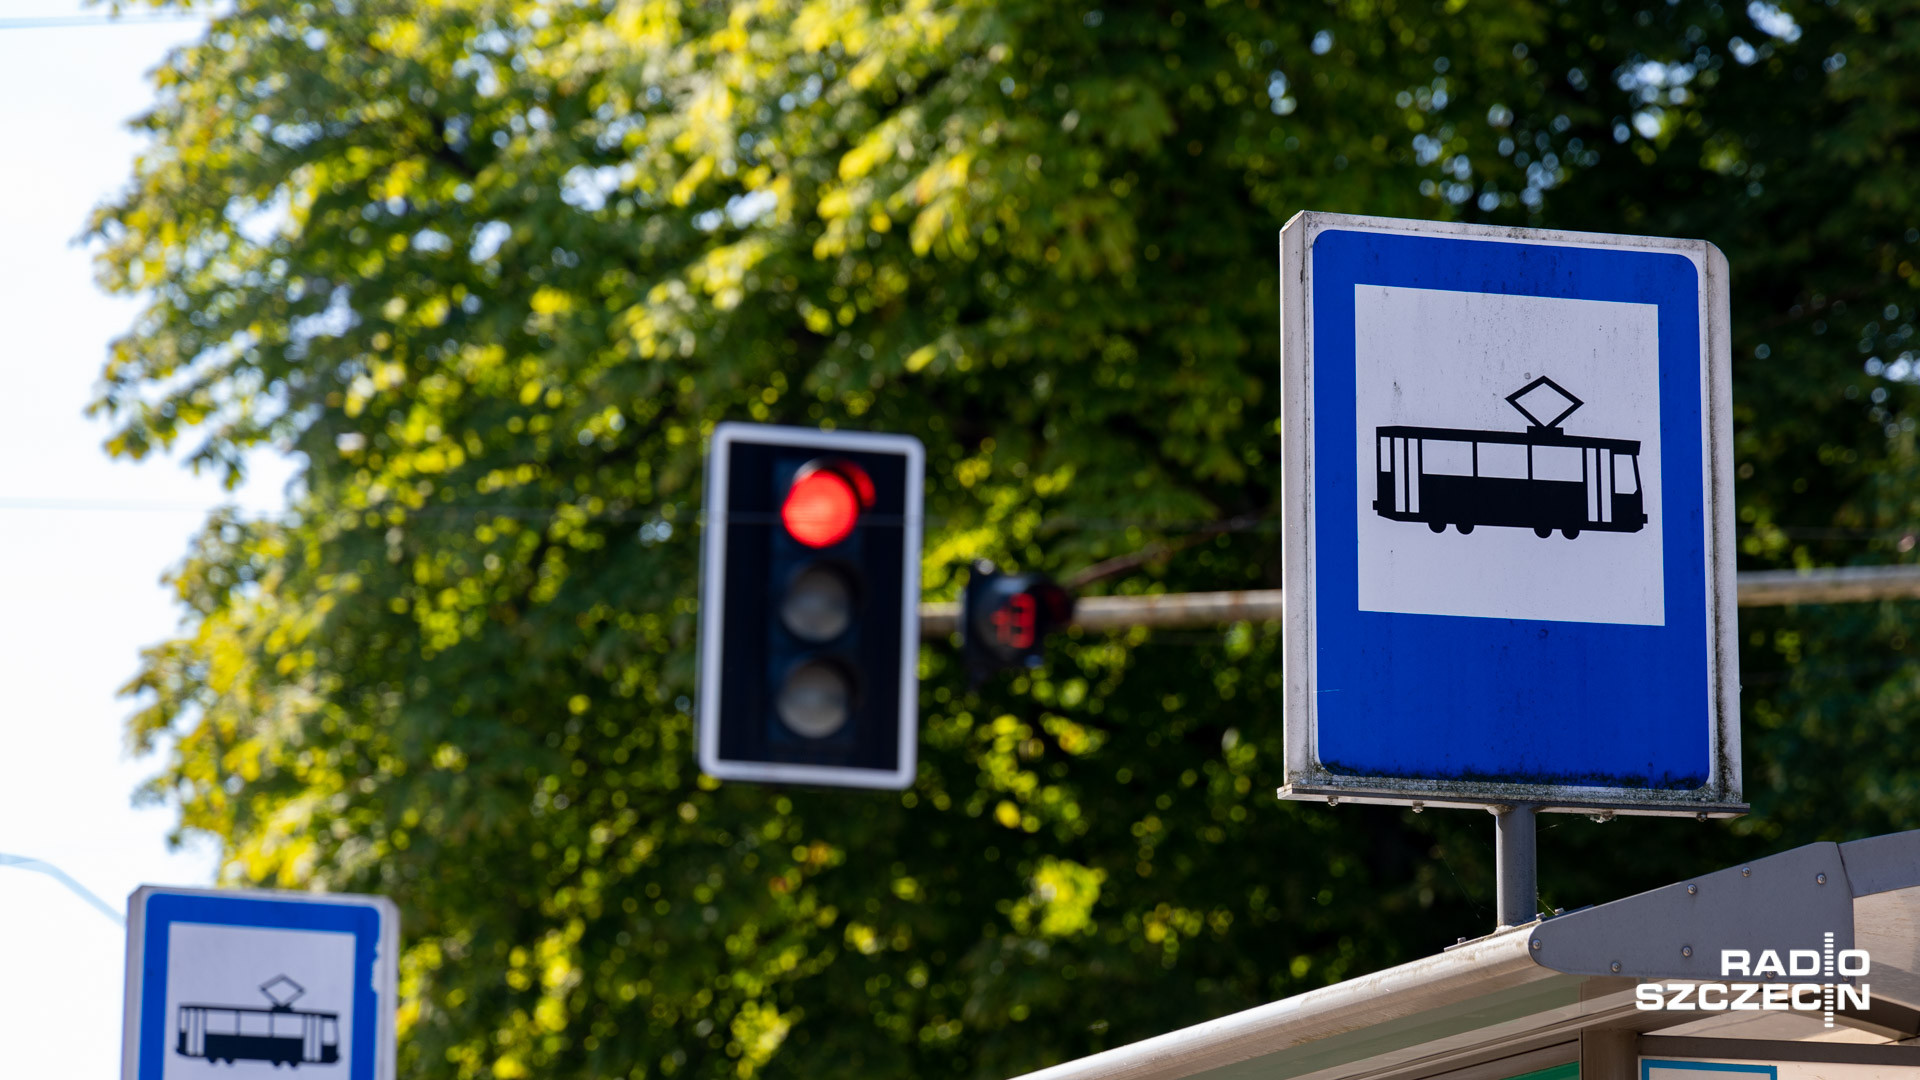 Od niedzieli kolejne cięcia kosztów w szczecińskiej komunikacji miejskiej. Zmieniają się rozkłady jazdy pięciu linii autobusowych i niemal wszystkich linii tramwajowych - mówi Hanna Pieczyńska z Zarządu Dróg i Transportu Miejskiego w Szczecinie.